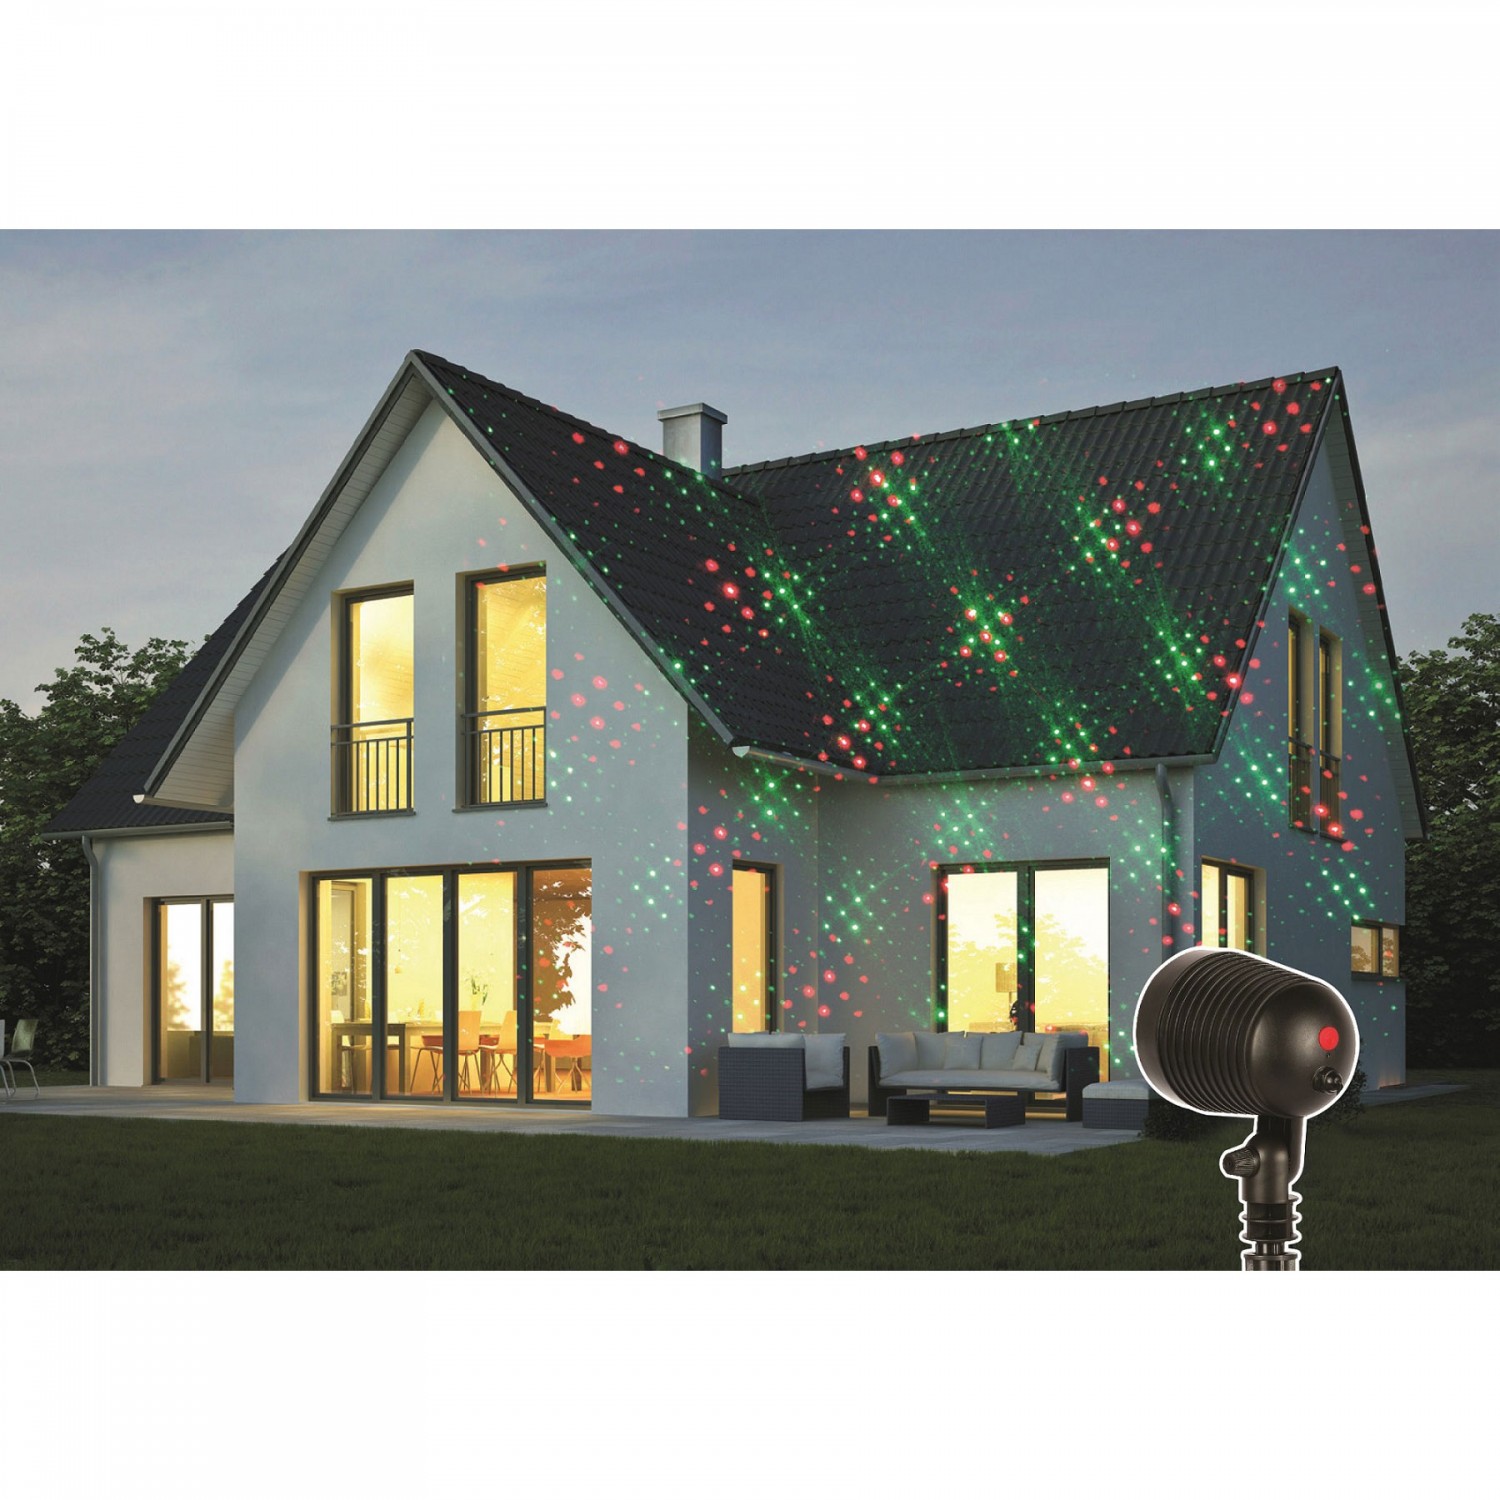 Instalatie Craciun IDL Laser Shower cu telecomanda, pentru iluminarea casei, 9 Functii  ce pot oferi un joc de lumini in combinatia de culori rosu si verde